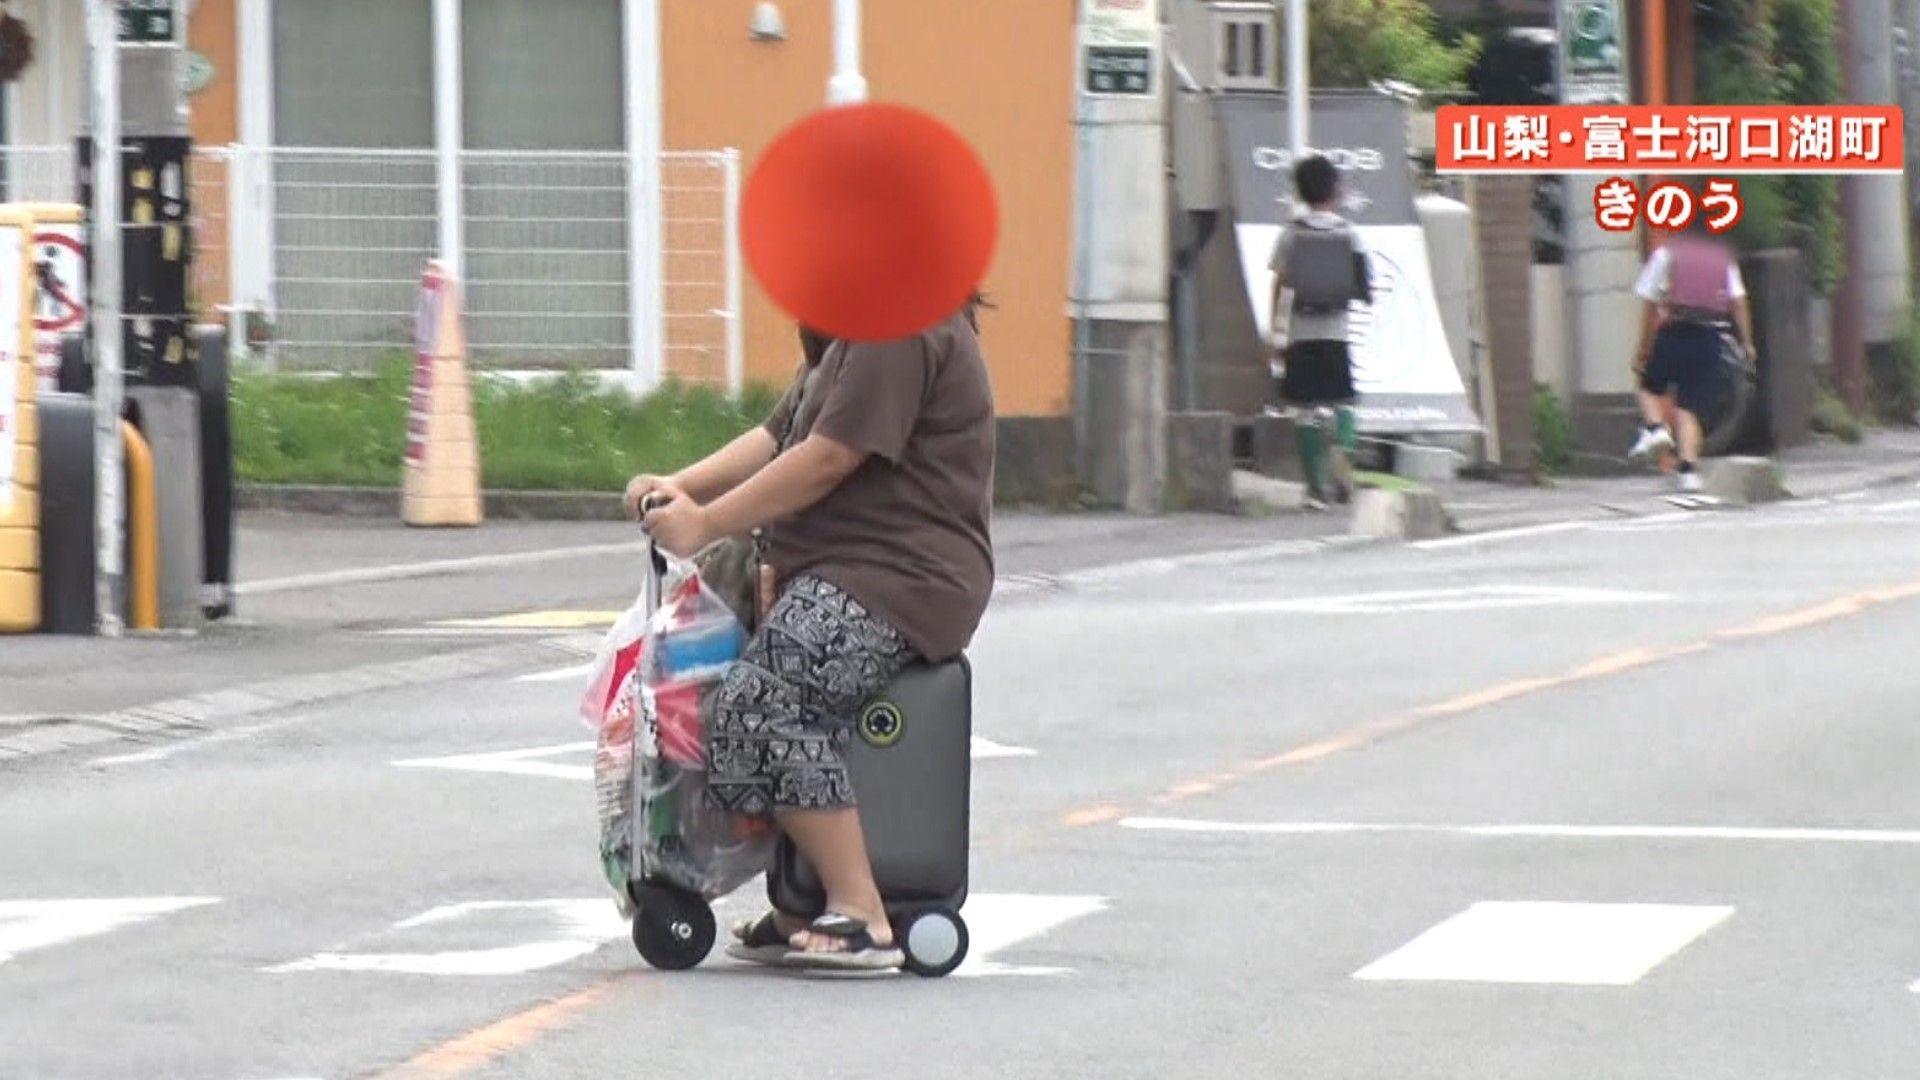 【注意】「電動スーツケース」での危険な走行相次ぐ…大阪では歩道走行で初摘発 富士山のぞむ観光地にも